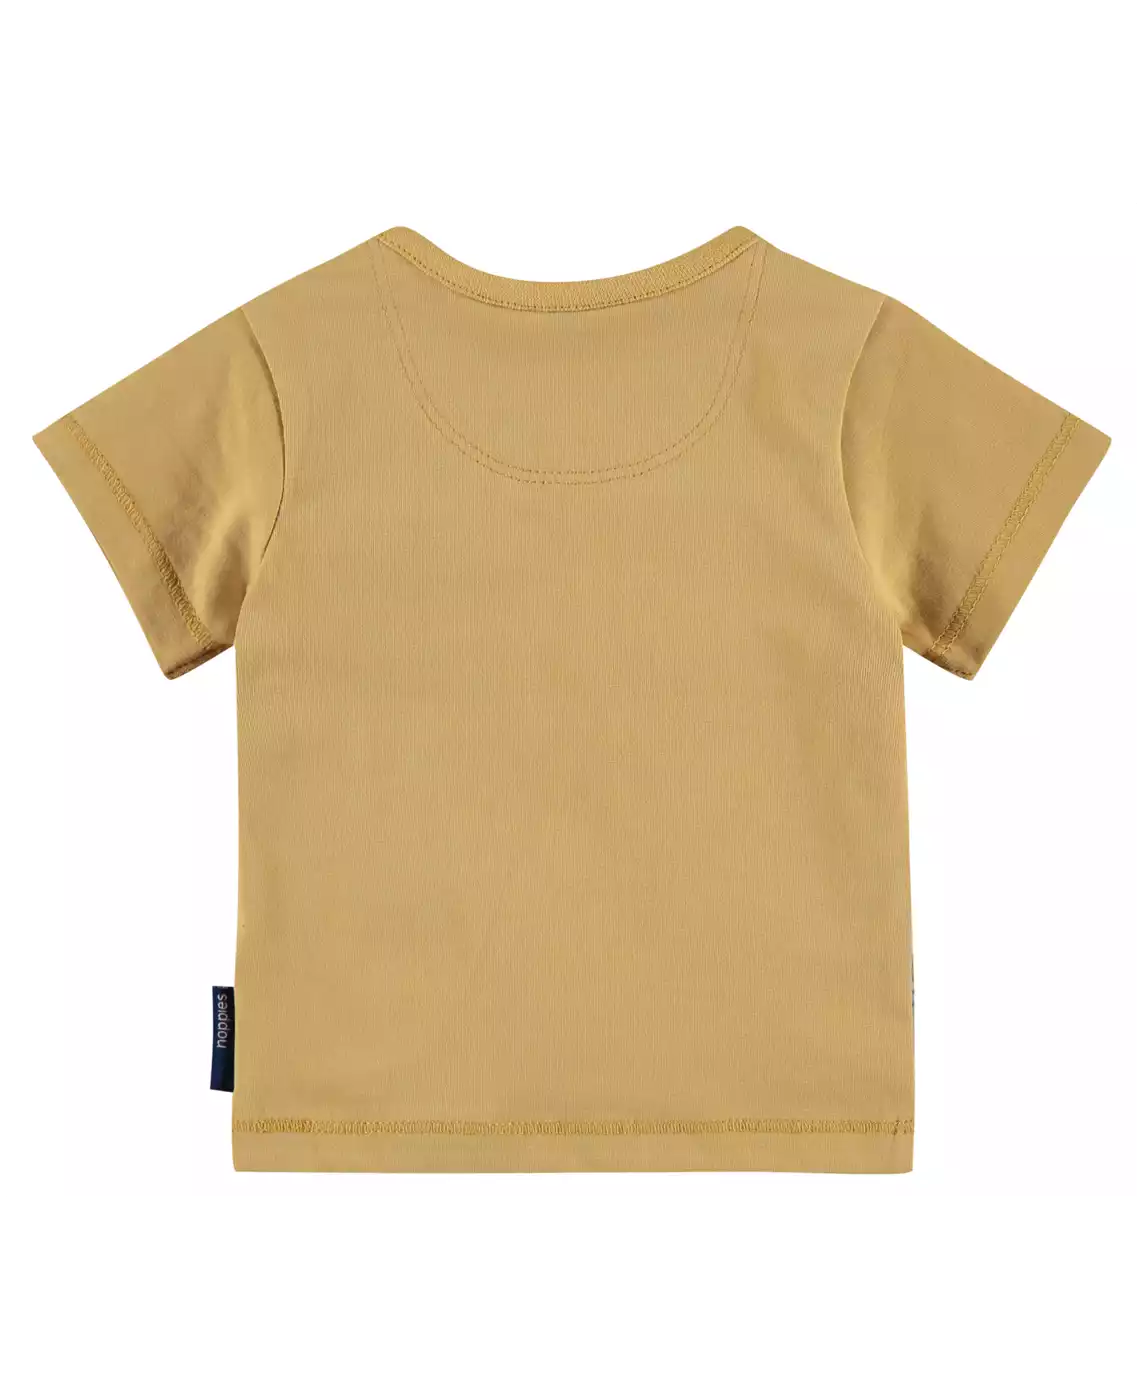 T-Shirt Lathrop noppies Schwarz Weiß Gelb 2007572468809 4